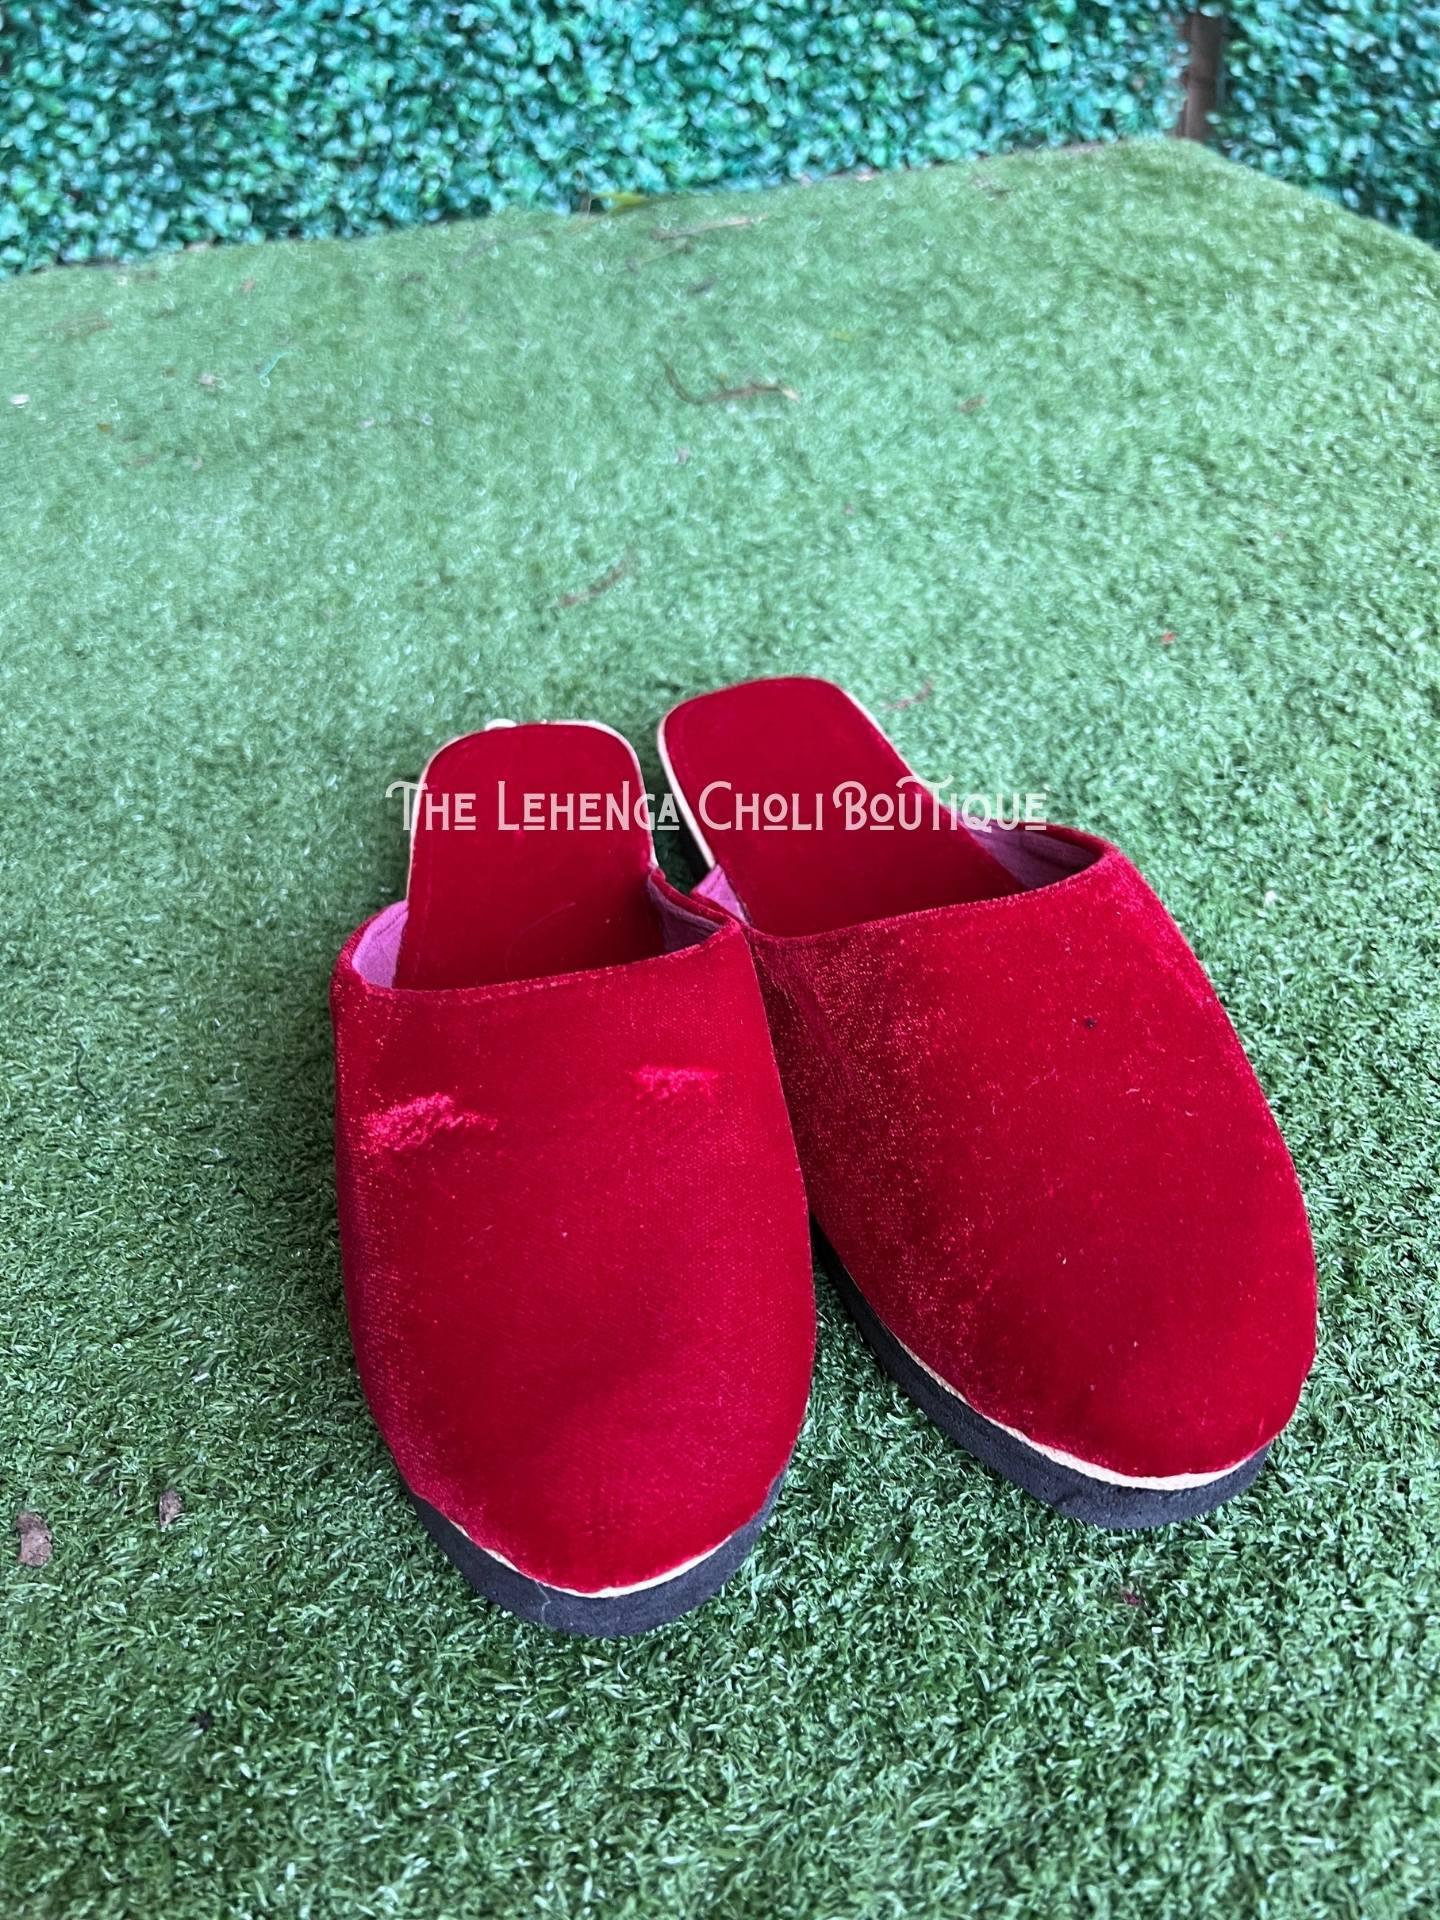 Buy LEE Greem Men's Red Velvet Slip On Office Shoe Loafers 6 at Amazon.in